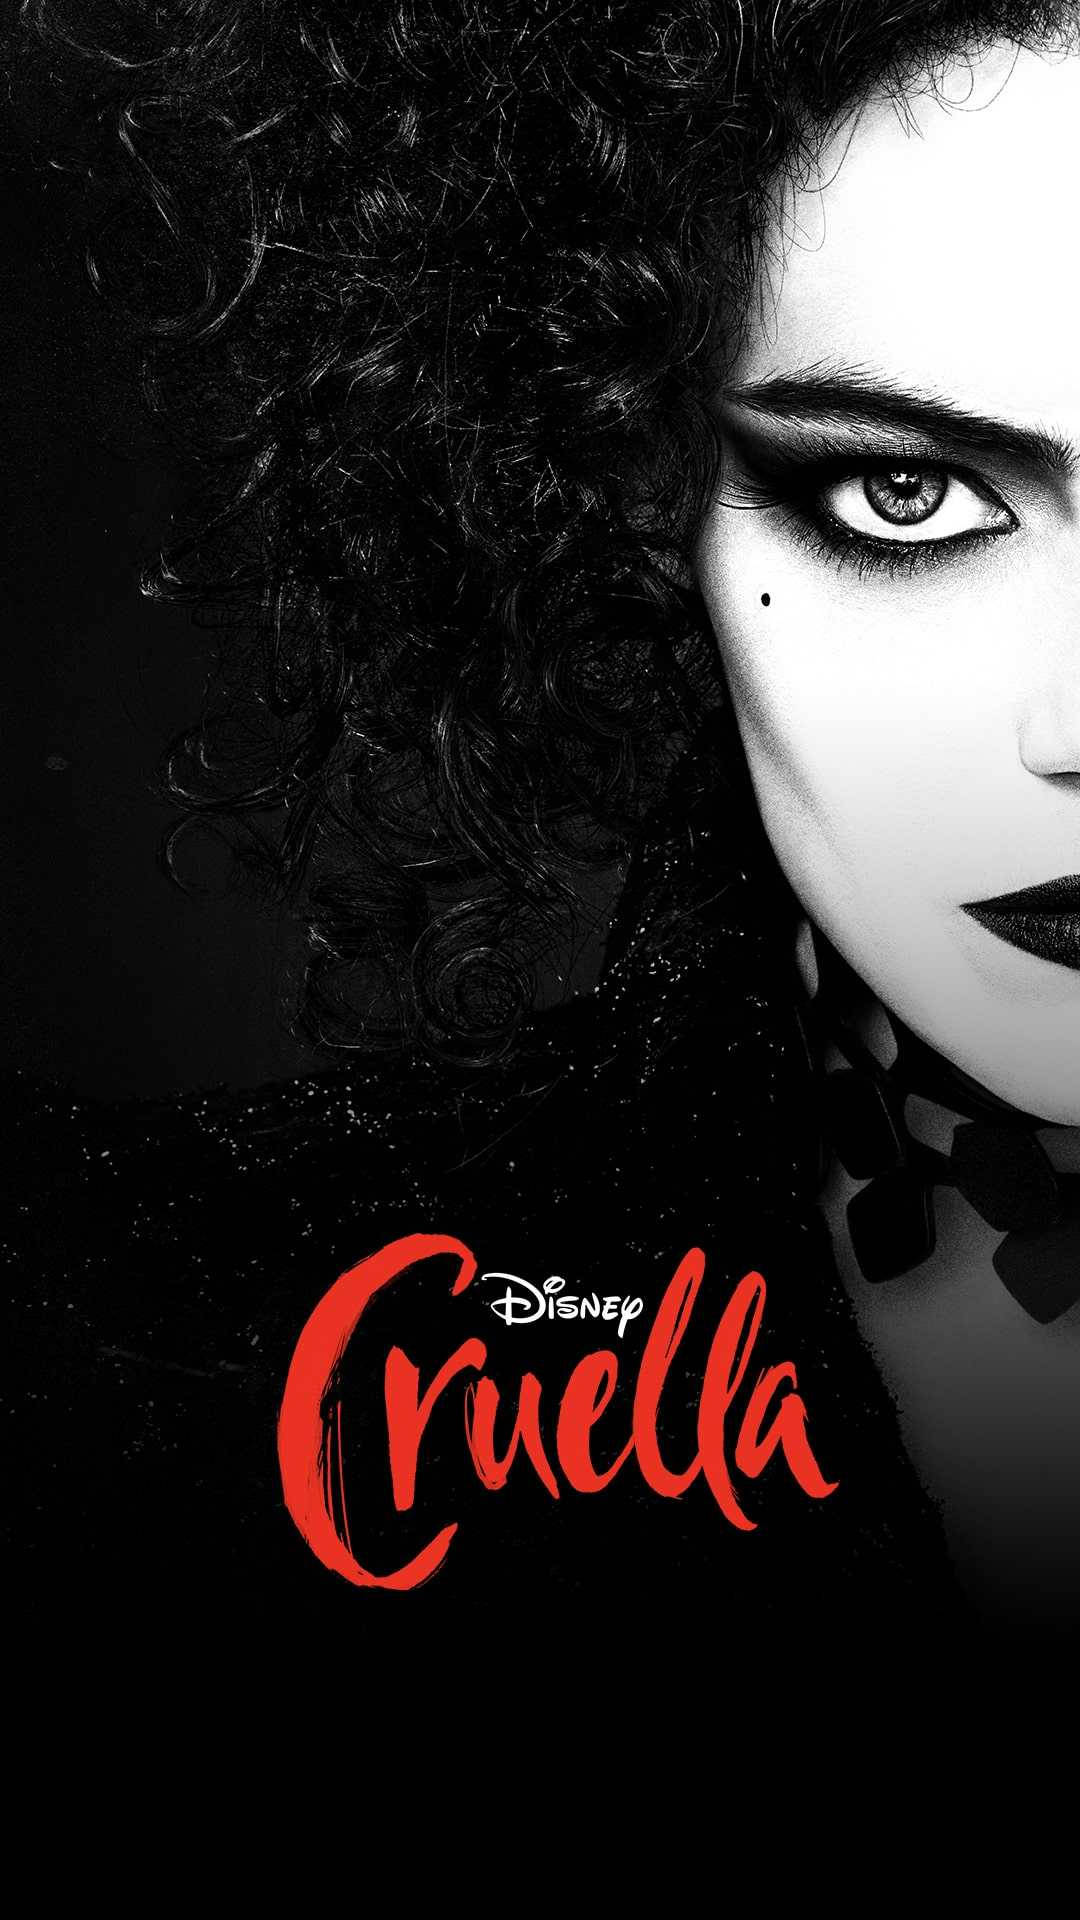 Disney's Cruella 2021 Film Poster